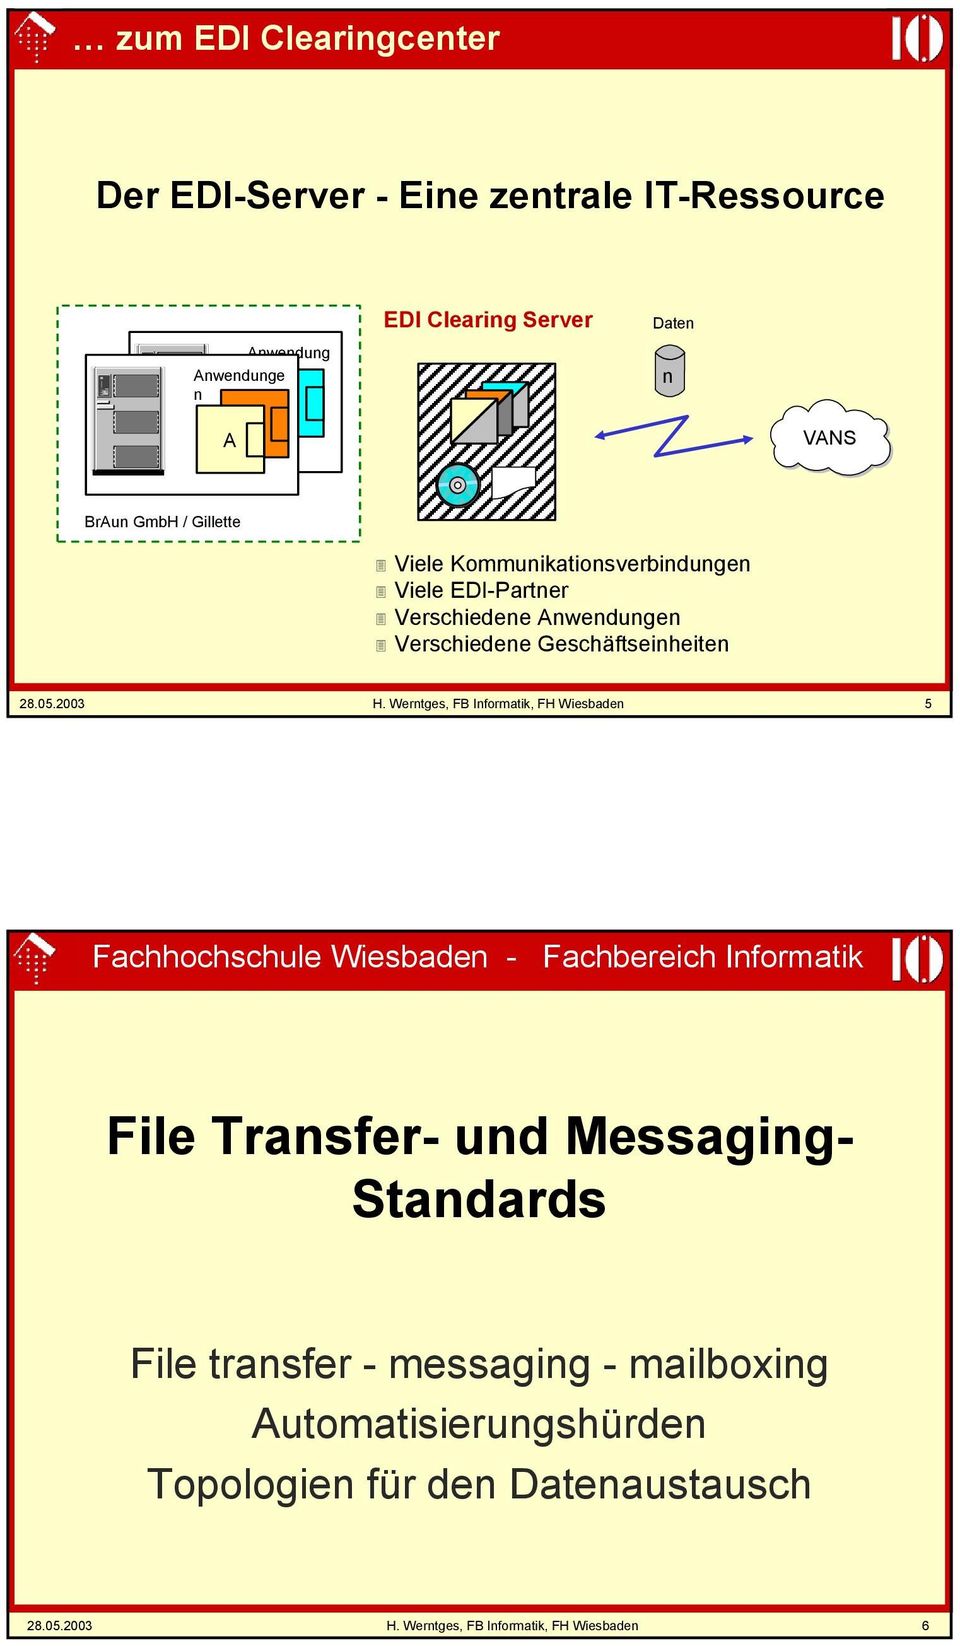 Werntges, FB Informatik, FH Wiesbaden 5 Fachhochschule Wiesbaden - Fachbereich Informatik File Transfer- und Messaging- Standards File